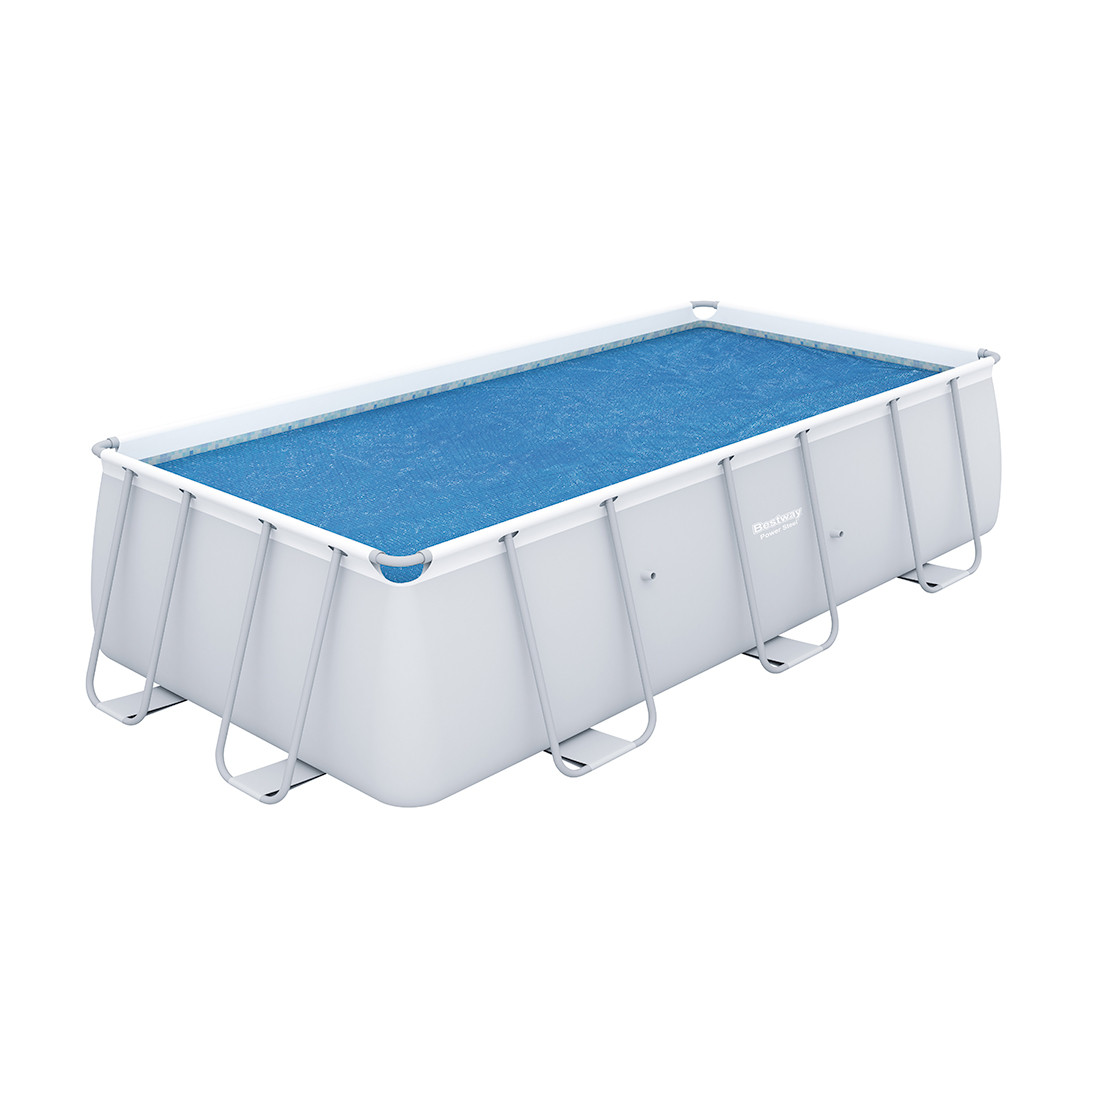 Тент солнечный для бассейнов размером 400 х 200 см, BESTWAY, 58240, PE, Синий, Сумка